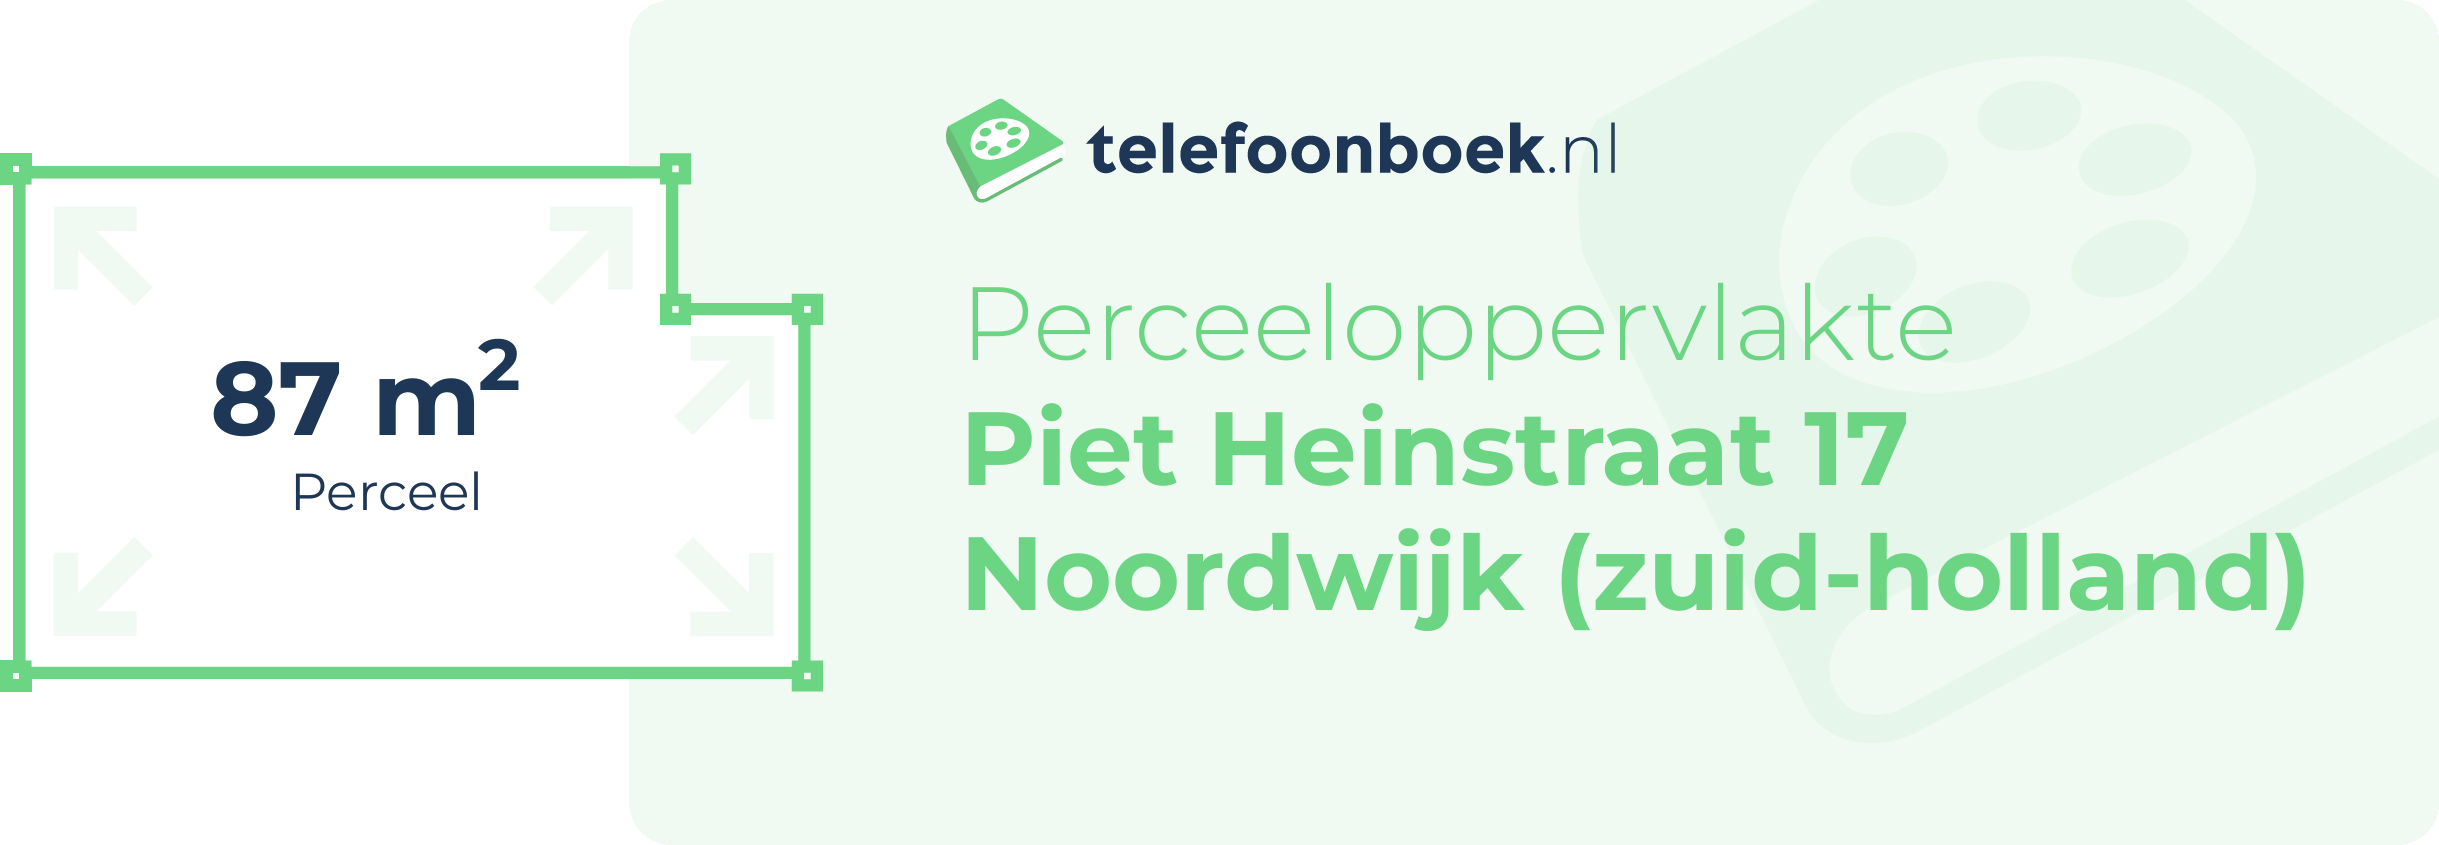 Perceeloppervlakte Piet Heinstraat 17 Noordwijk (Zuid-Holland)